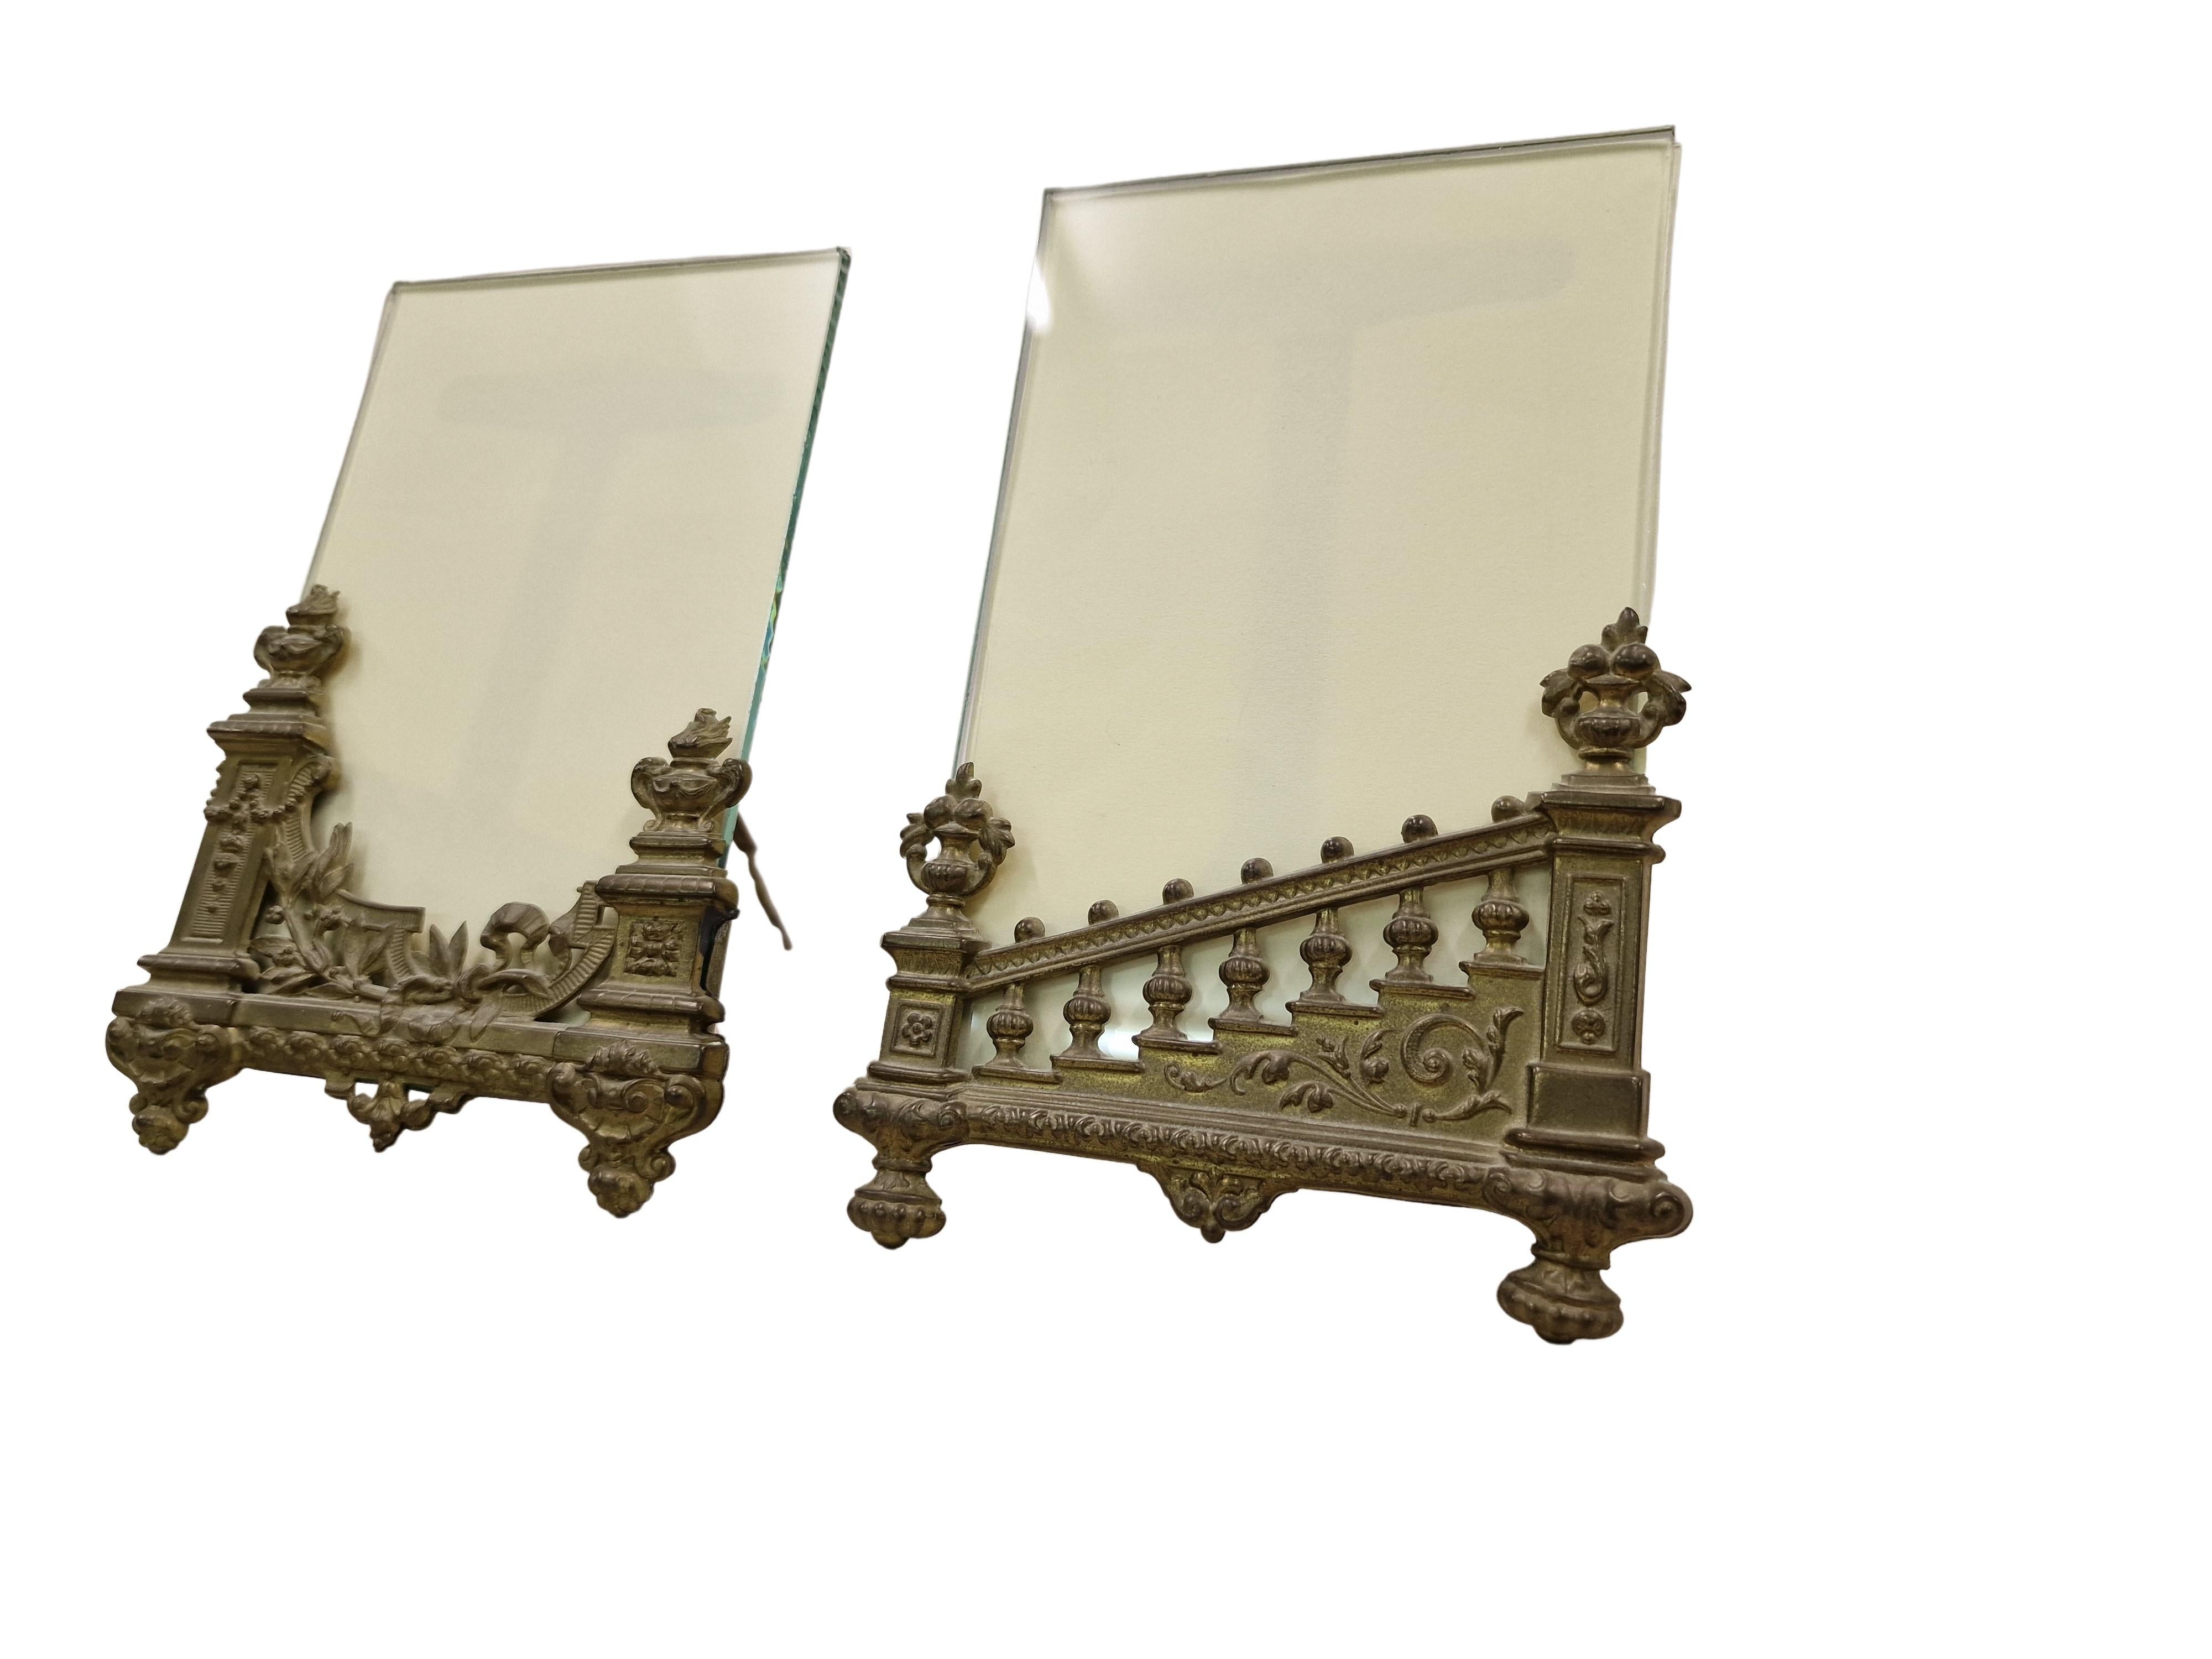 Merveilleuse paire de cadres de table rares, fabriqués vers 1890. 
La construction est en laiton, dans laquelle une plaque de verre a été insérée, entre laquelle se trouve un emplacement pour l'image que vous avez choisie.

La construction des